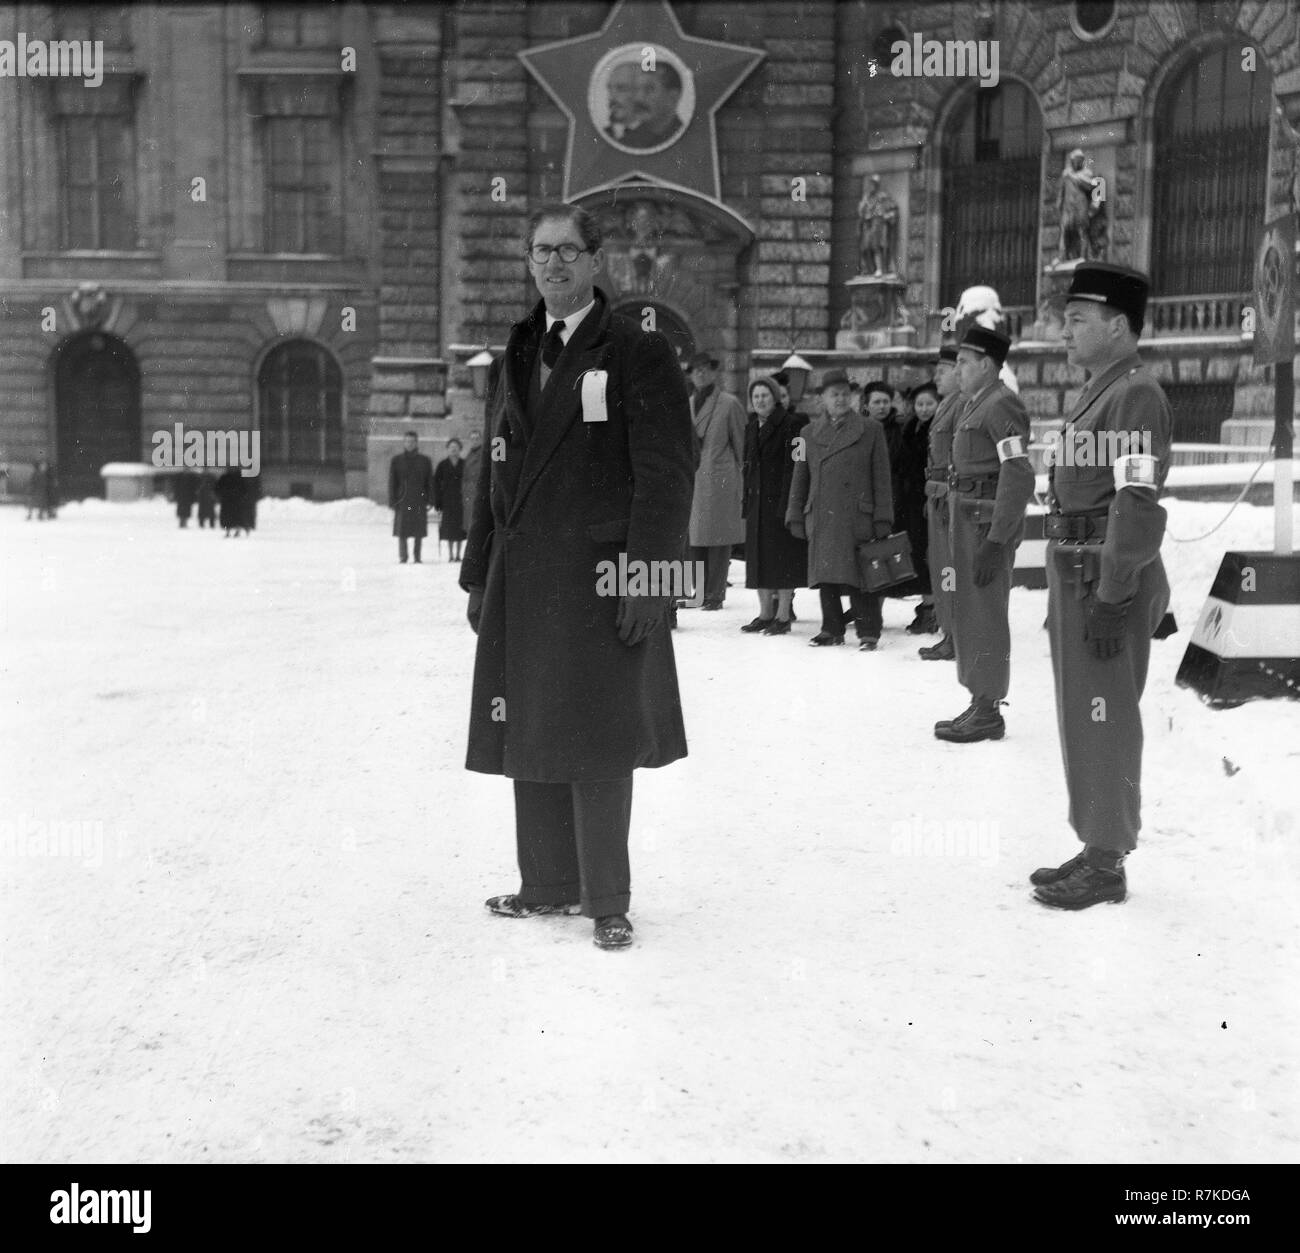 Viena de posguerra durante la ocupación aliada changhing mensual de la guardia, en Viena, Austria en el Palacio Imperial Hofburg Viena Wien en 1947 Foto de stock